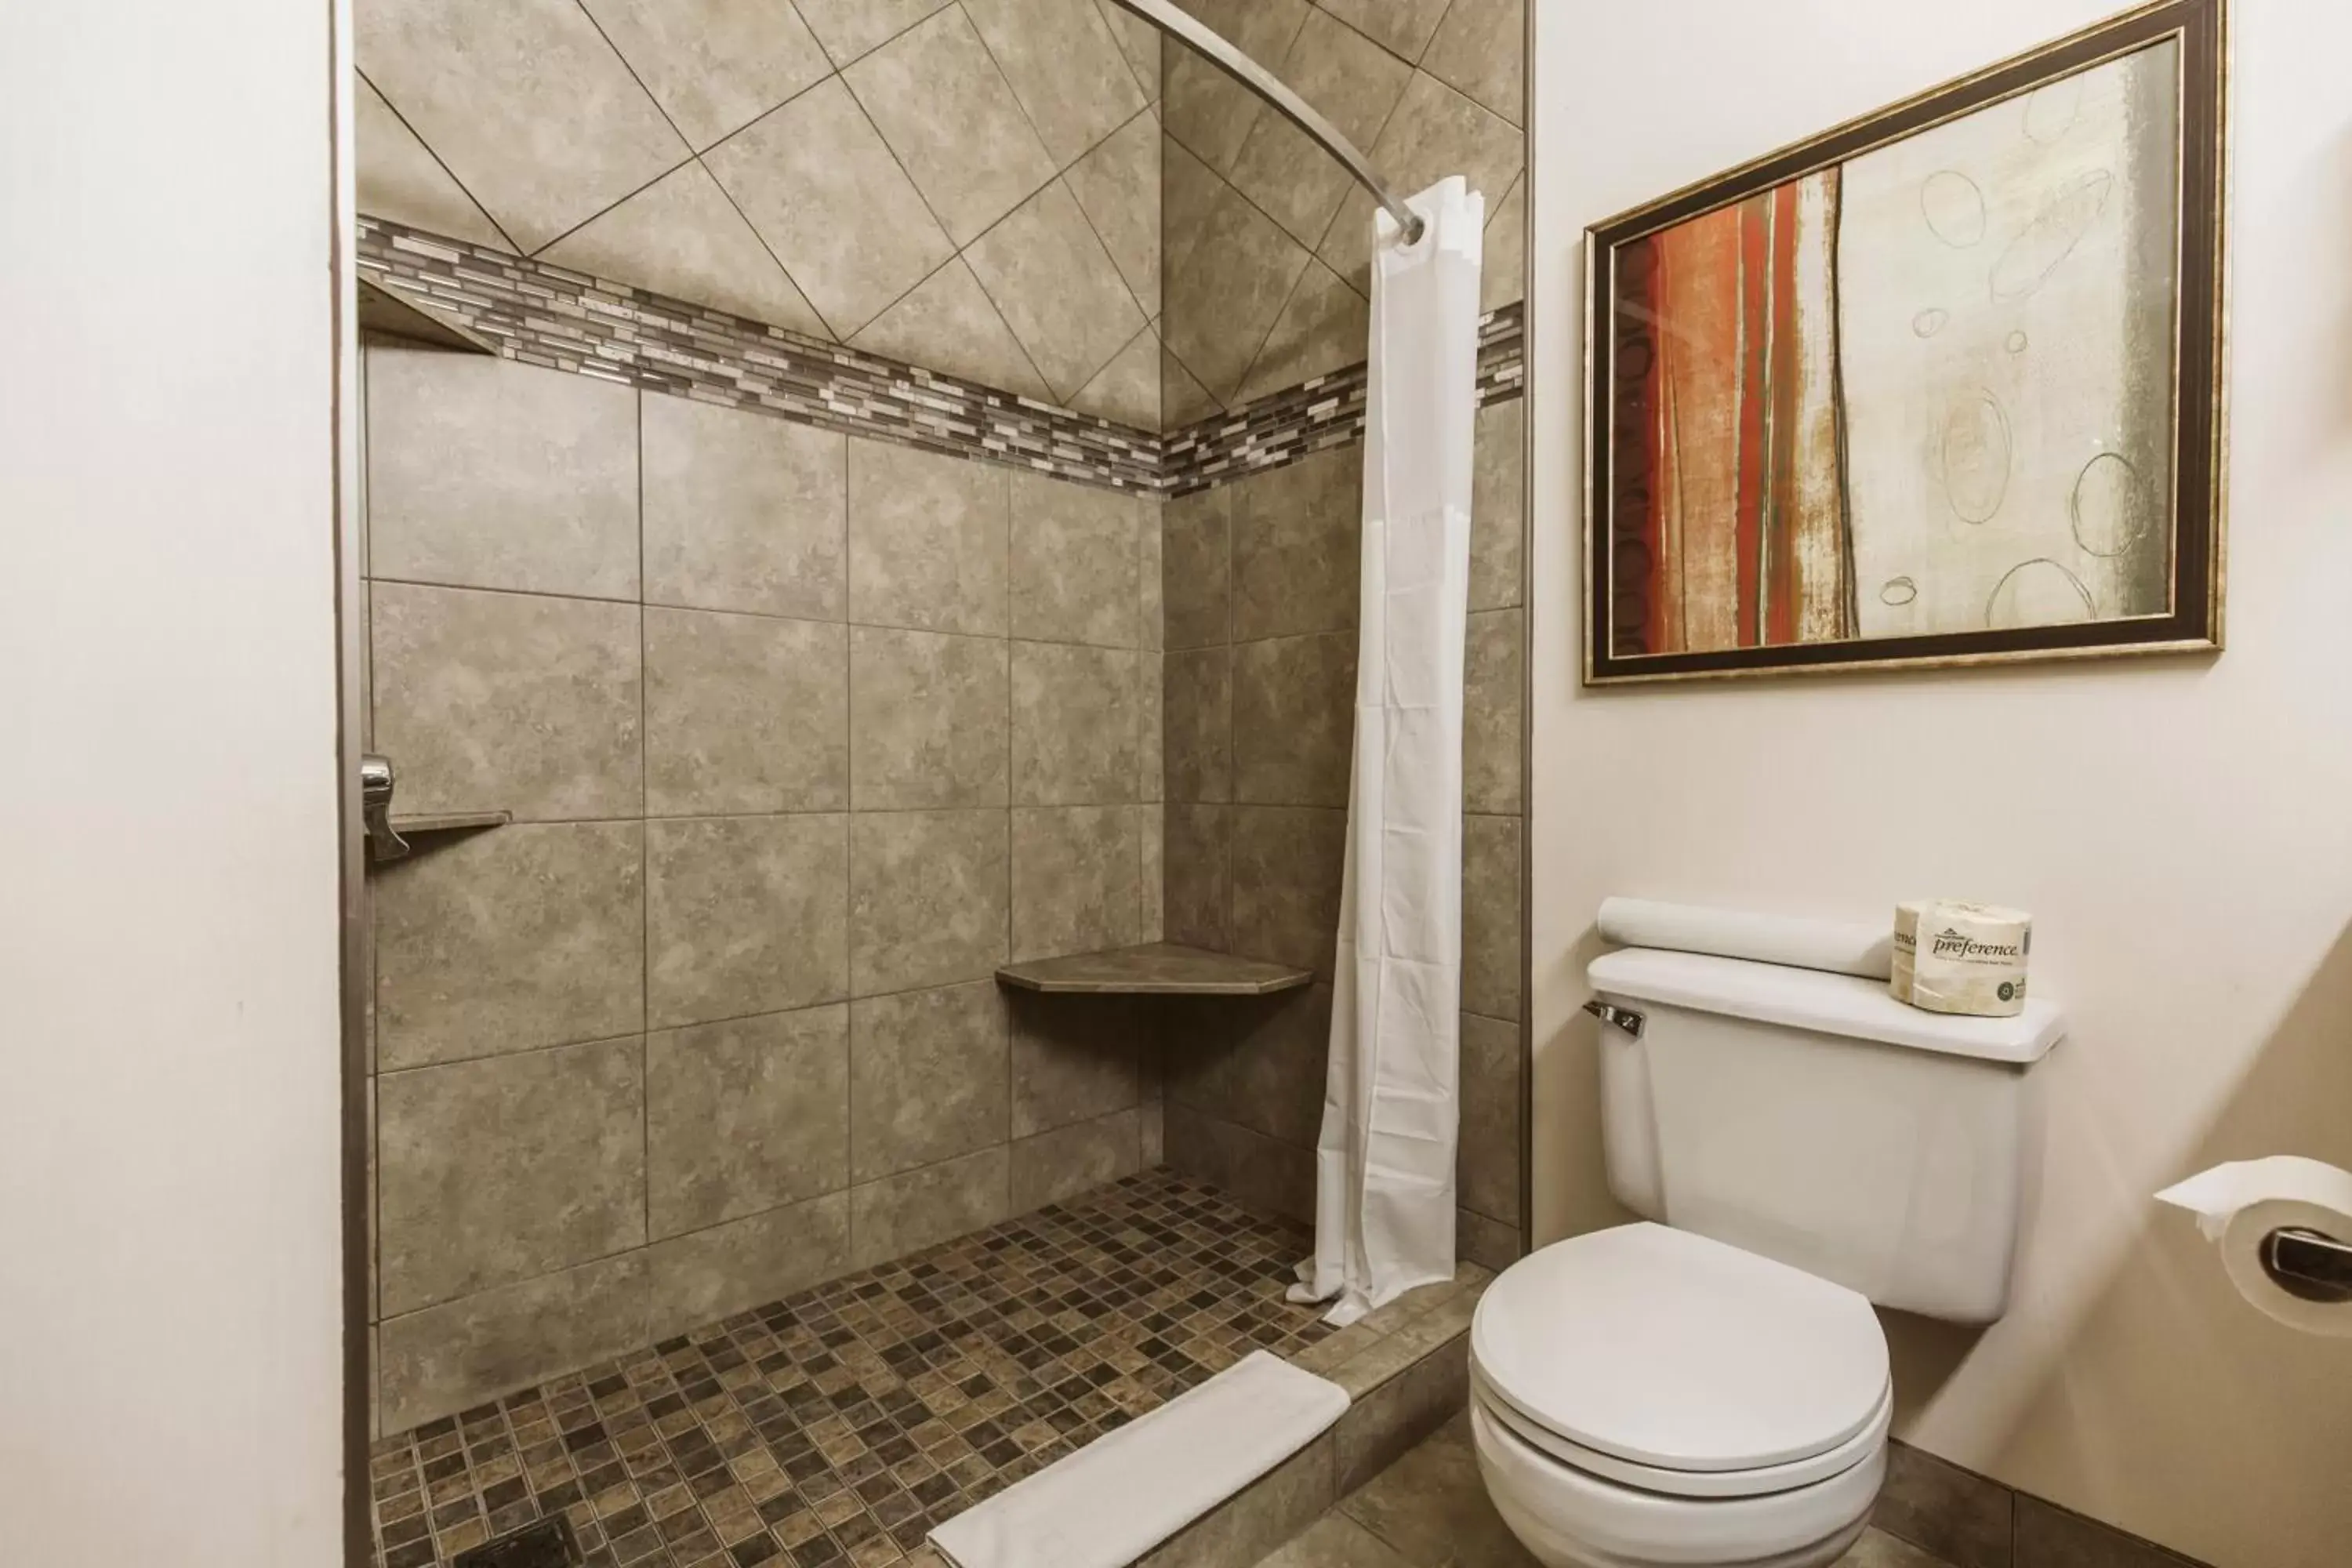 Bathroom in Expressway Suites of Bismarck